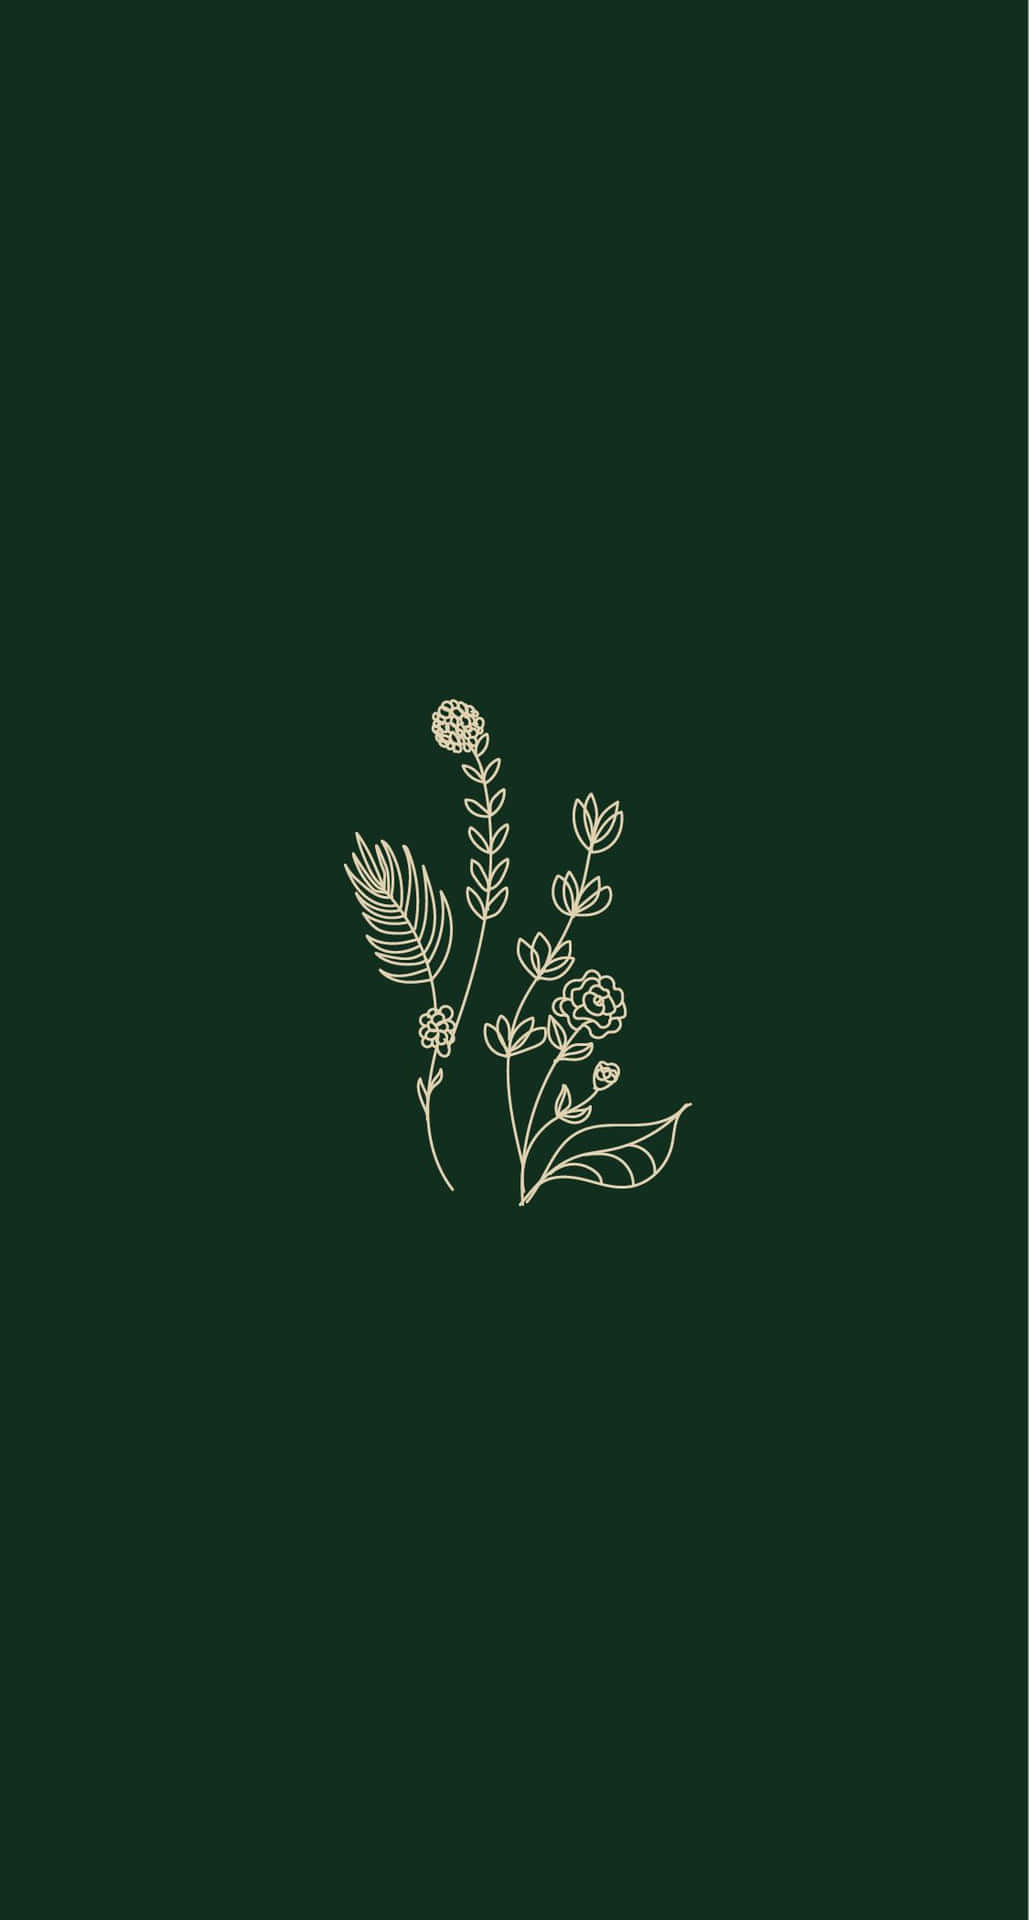 Olive Green Floral Illustration Wallpaper